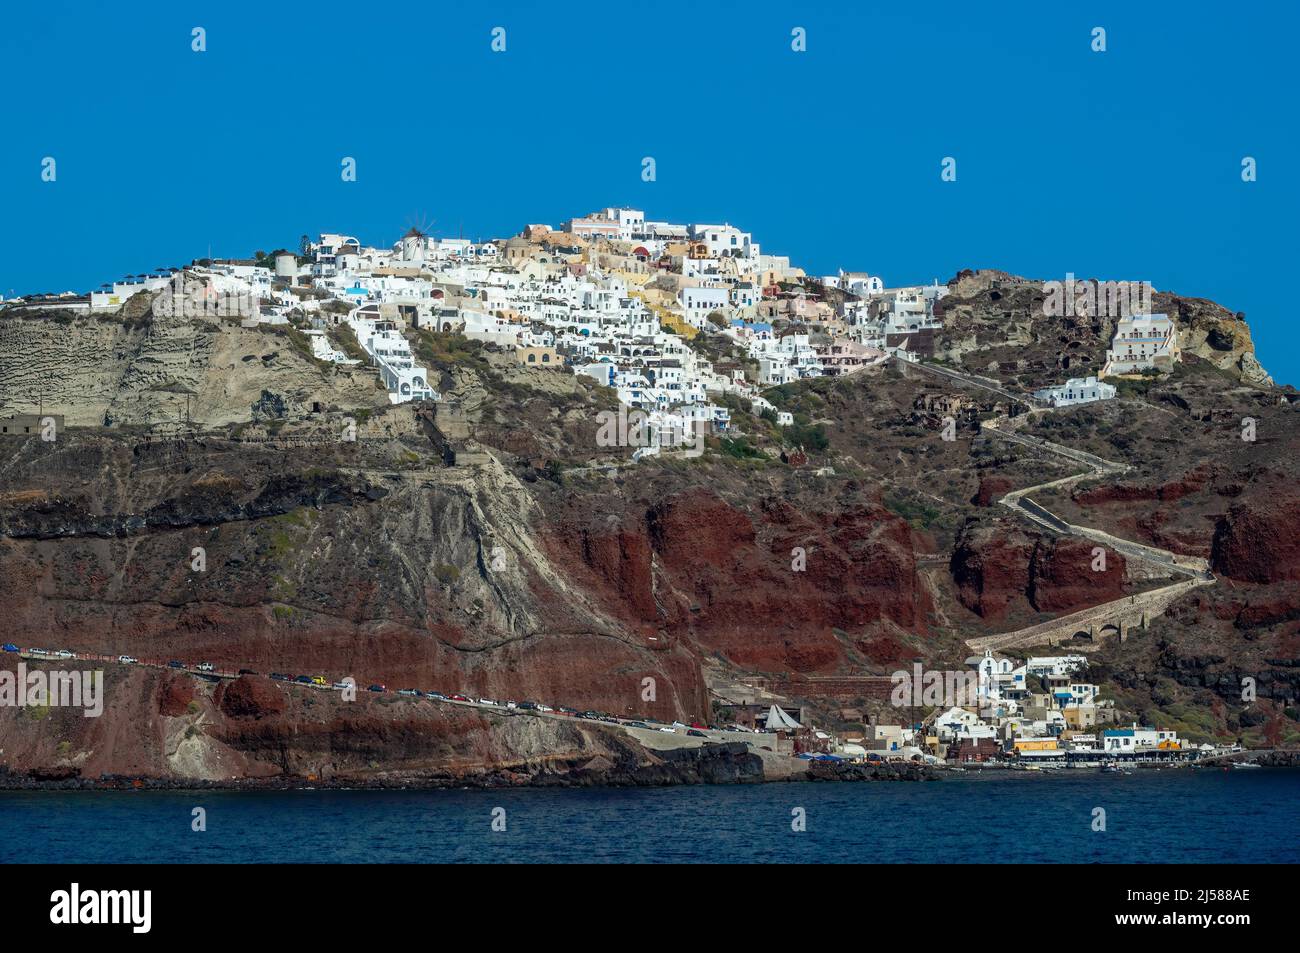 Die einzigartige griechische Insel Santorini in Weitblick, ein Blick auf die besondere Architektur Stockfoto